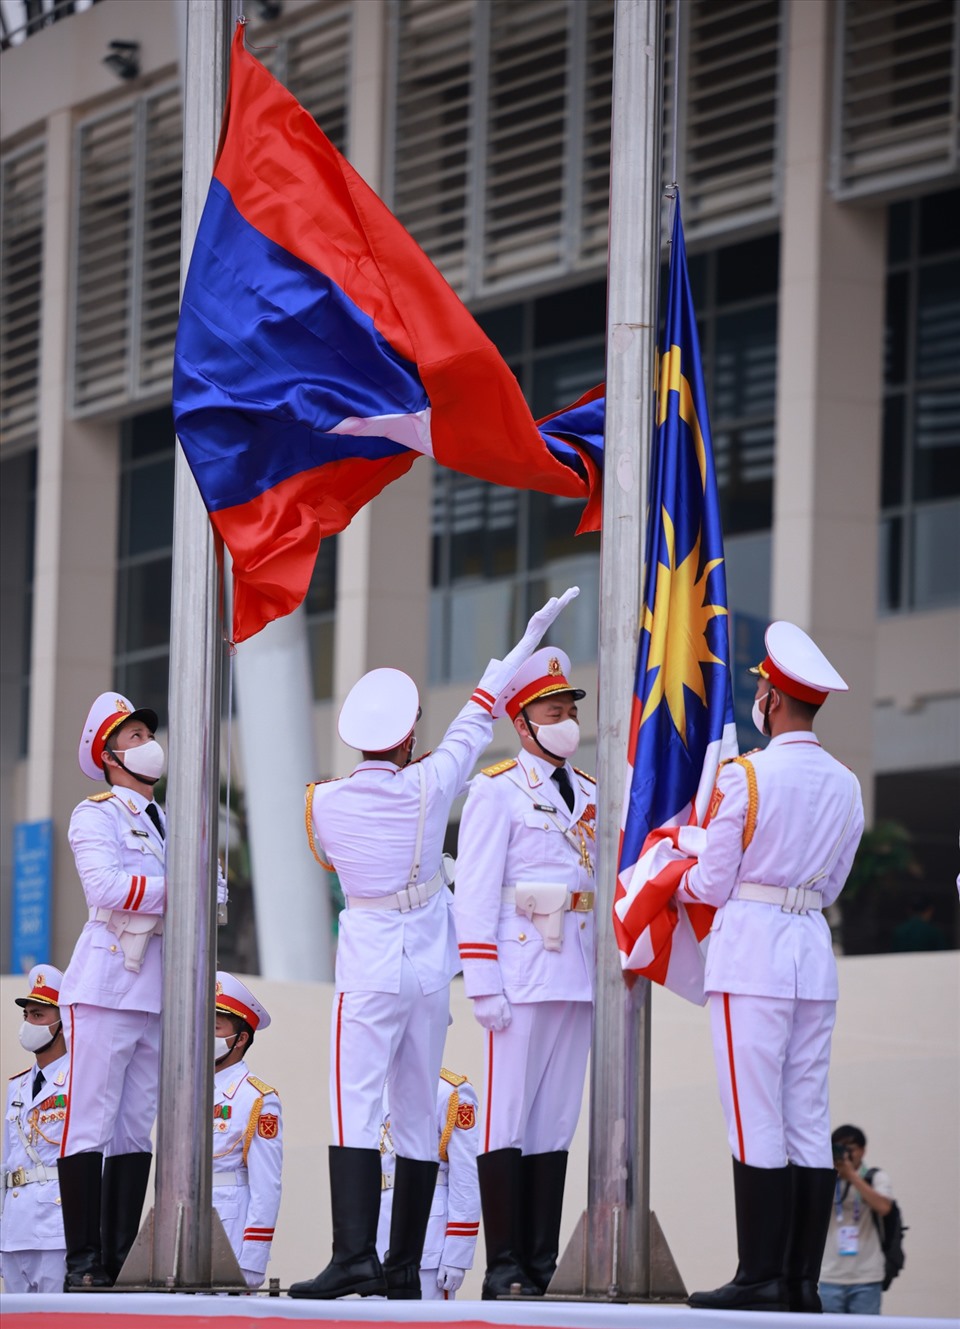 Đúng 9h34 ngày 11.5, lá cờ Tổ quốc đã tung bay cùng với cờ của 10 quốc gia khu vực Đông Nam Á, báo hiệu kỳ SEA Games 31 sắp bắt đầu.